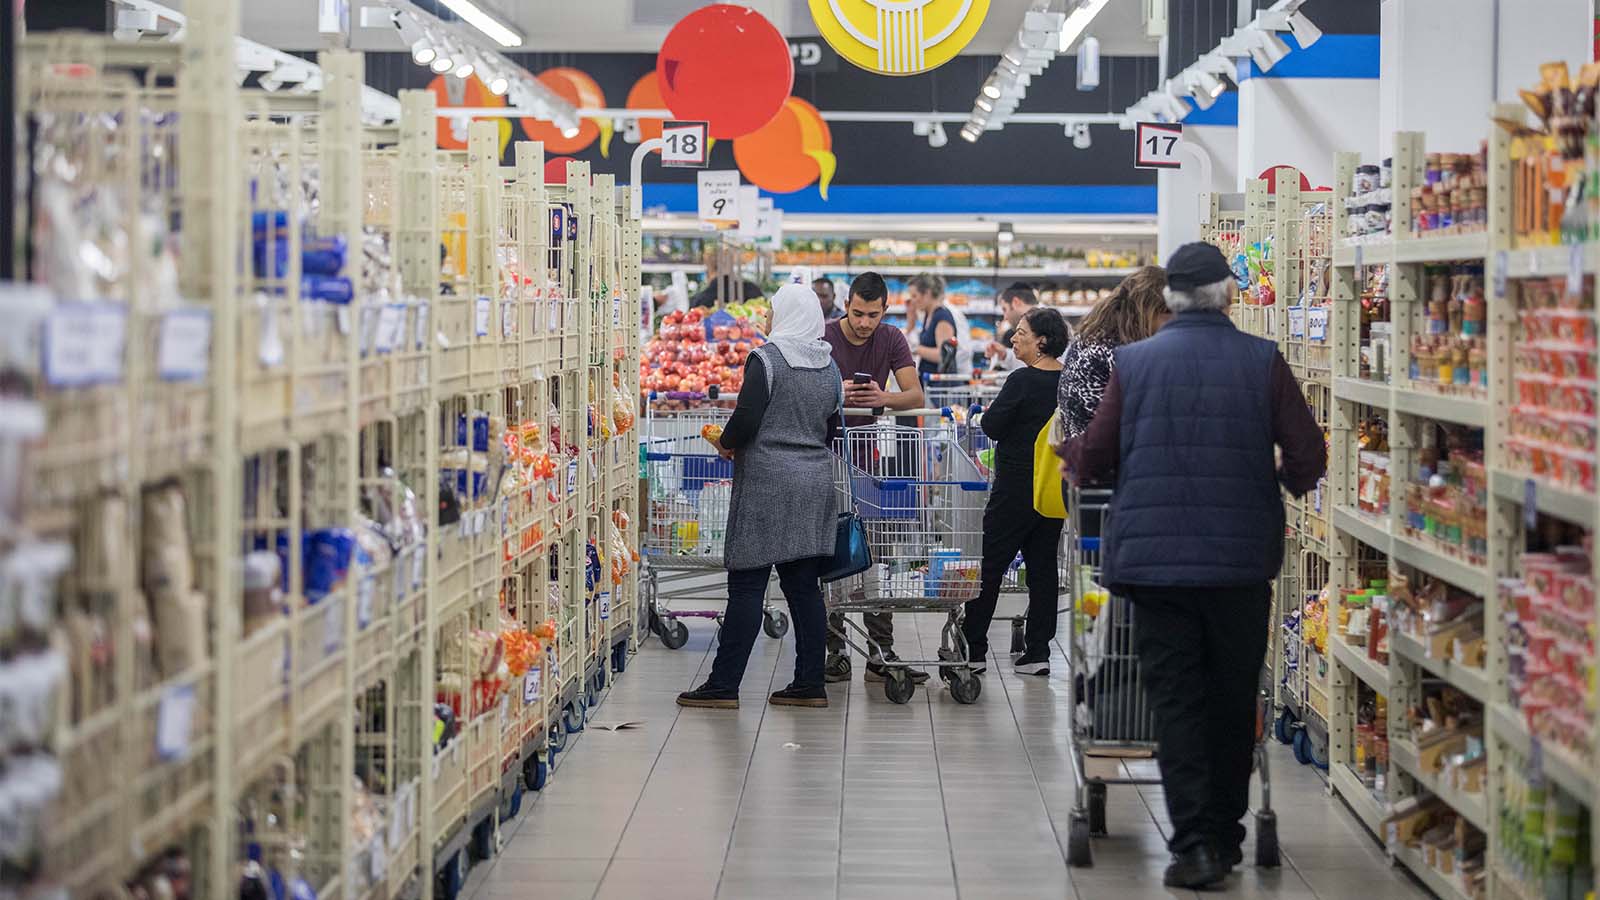 אנשים עושים קניות בסופרמרקט בירושלים, נובמבר 2017 (צילום: יונתן זינדל / פלאש90).